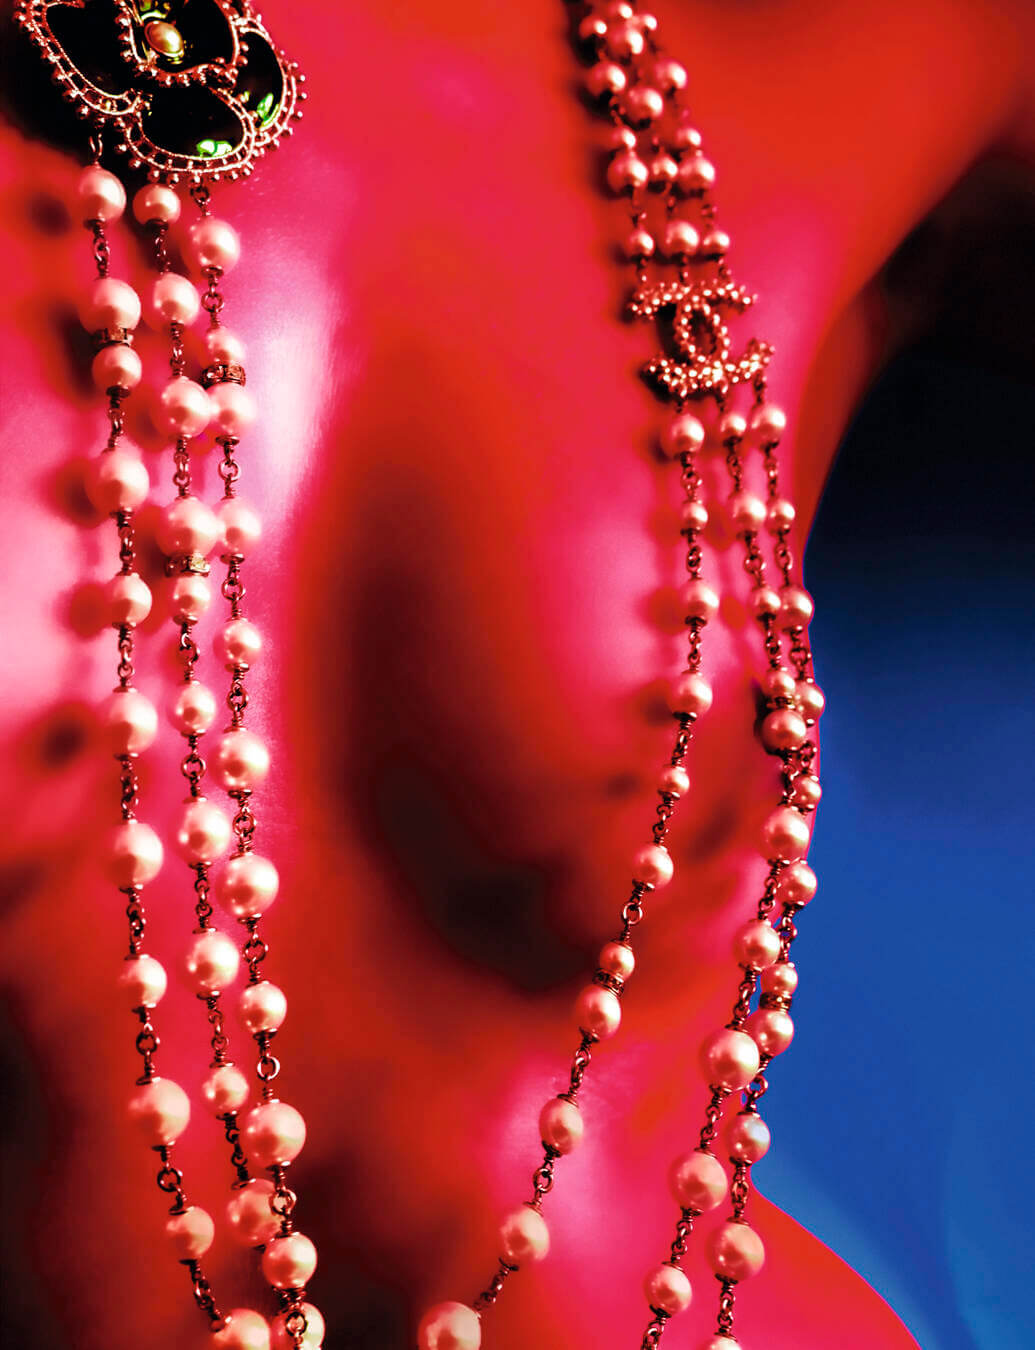 Explore The Codes Of Coco Chanel Through The V&A's 'Gabrielle Chanel:  Fashion Manifesto' - 10 Magazine